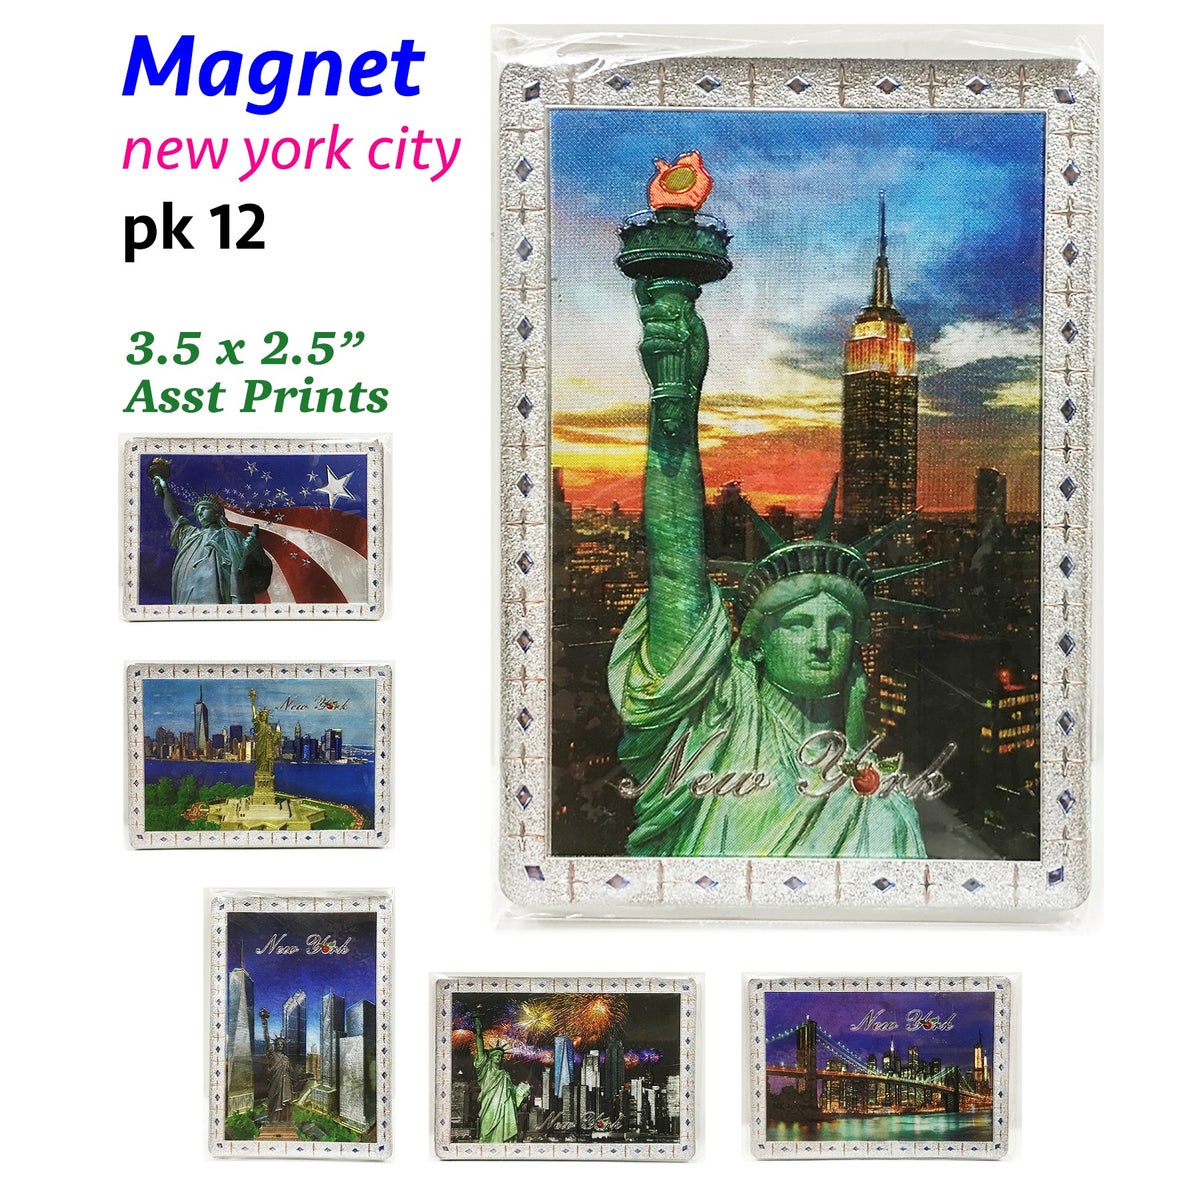 MAGNETS: NEW YORK CITY, ASST., 3.5"x2.5" #MG9009 (PK 12)